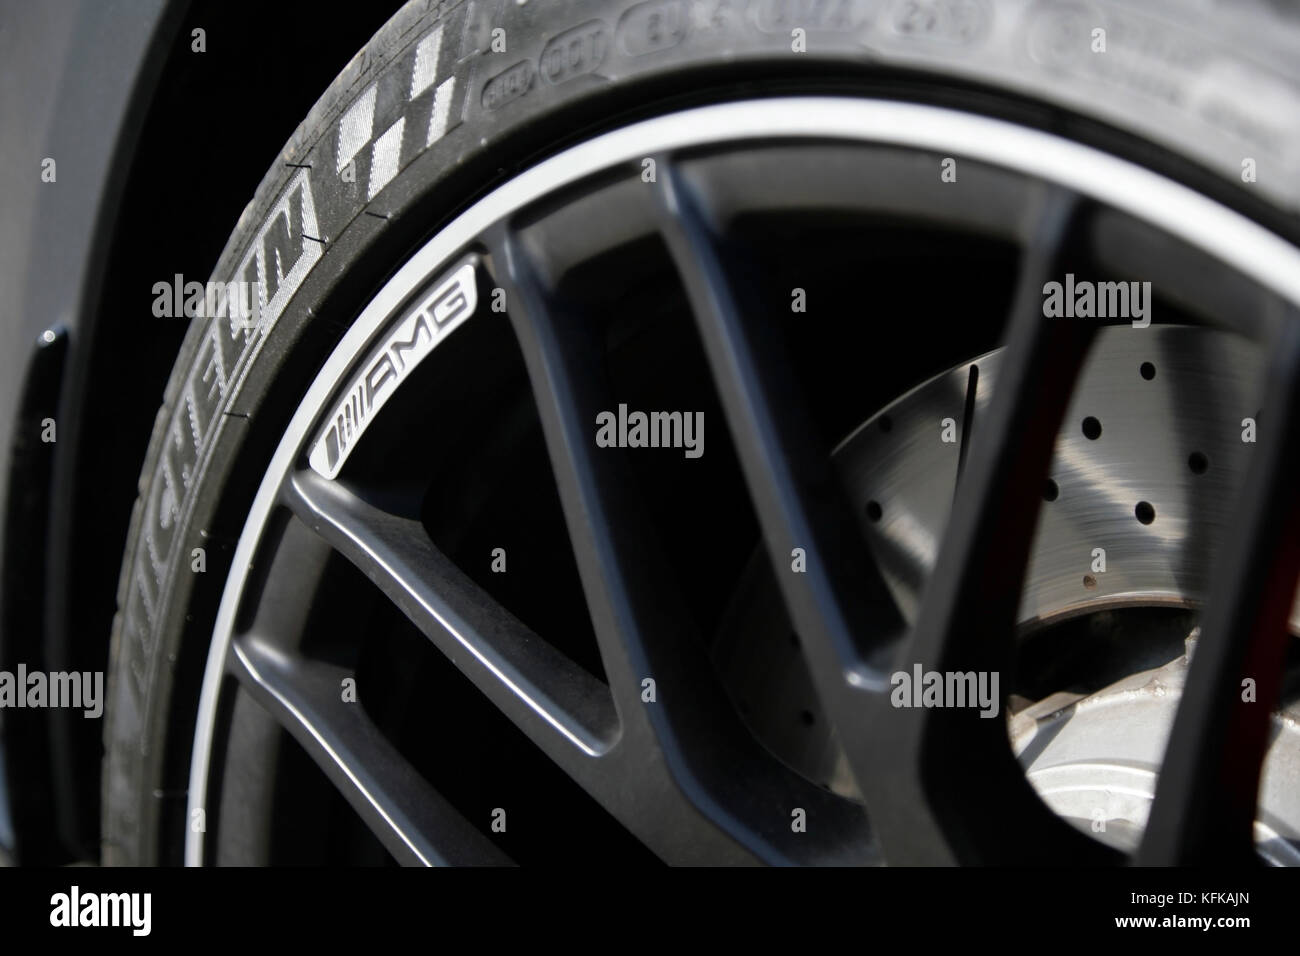 Michelin Reifen zu AMG Mercedes Sportwagen mit belüfteten Bremsscheiben  Stockfotografie - Alamy